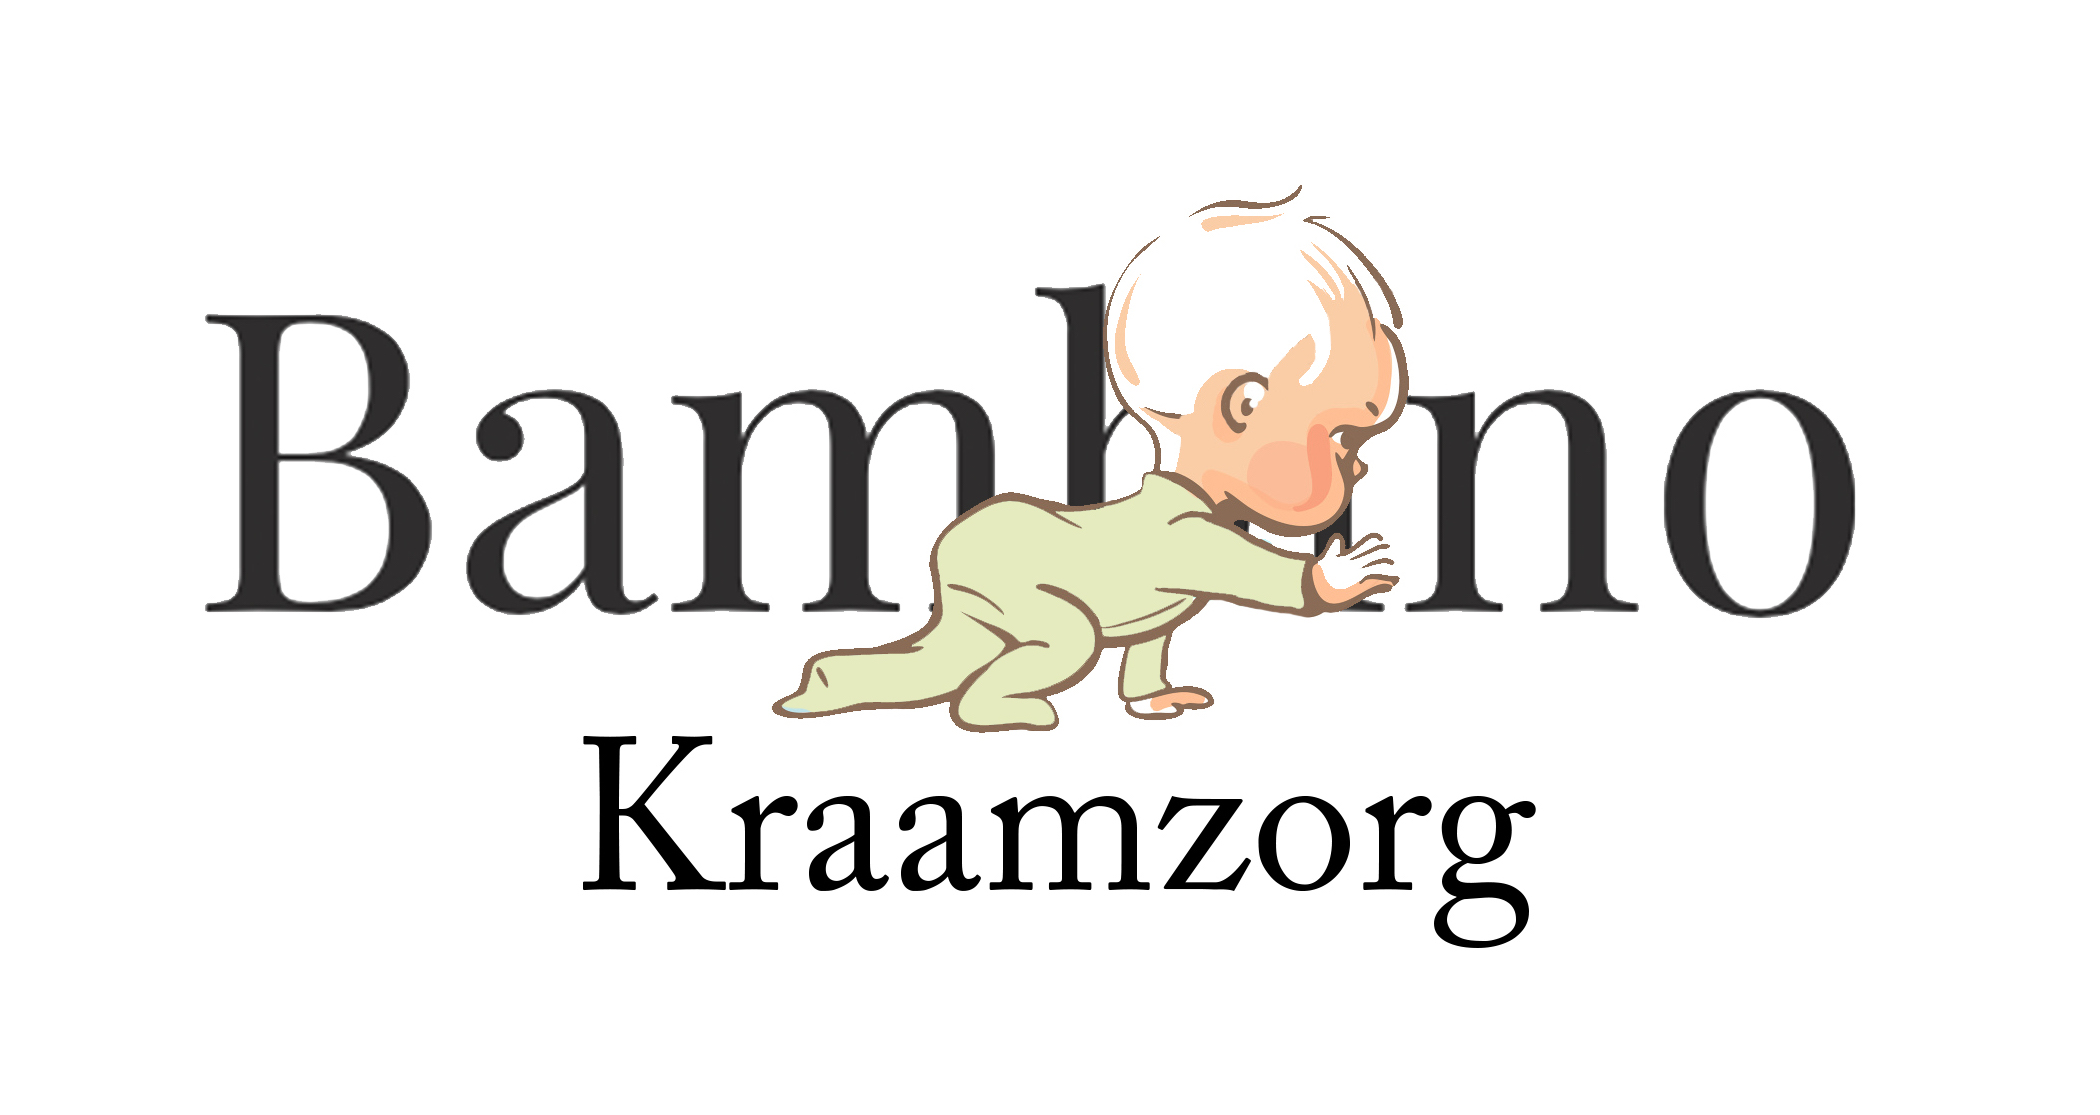 Bambino Kraamzorg